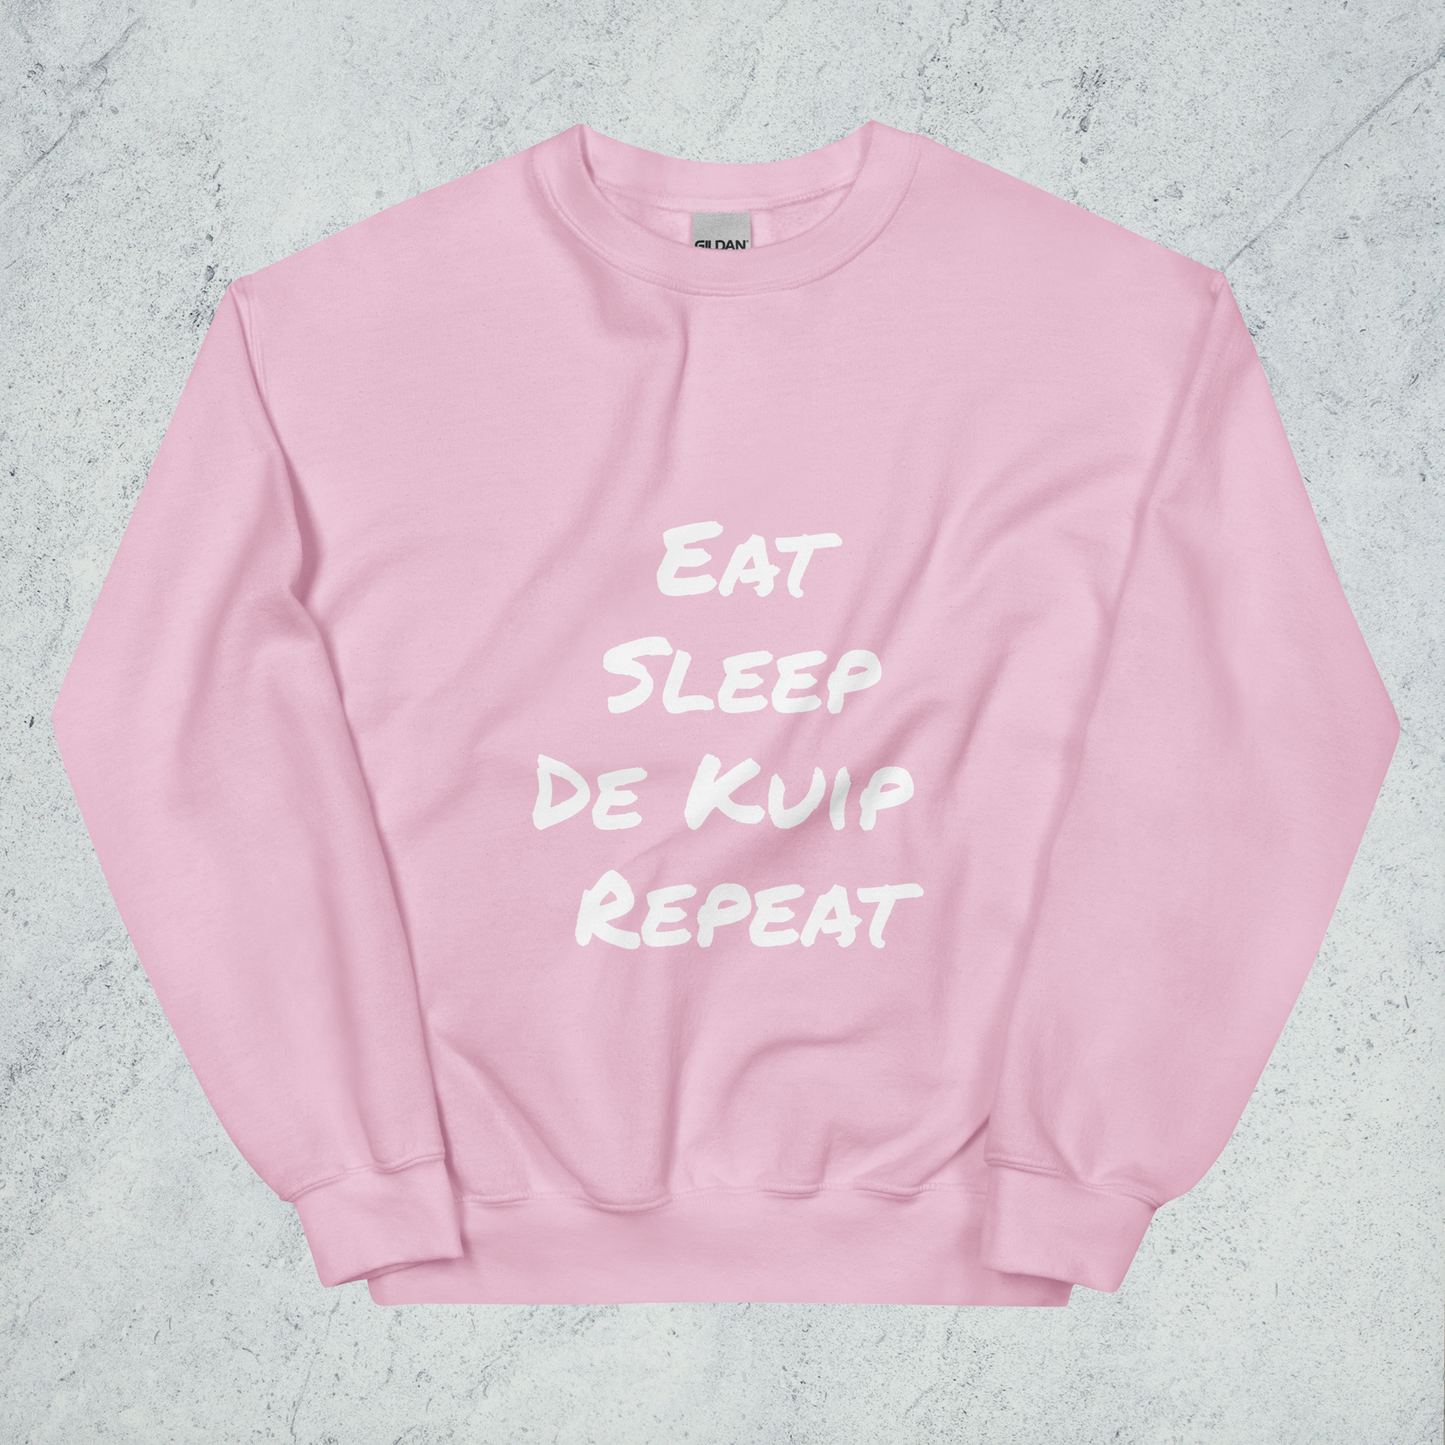 Eat Sleep De Kuip Repeat Sweater